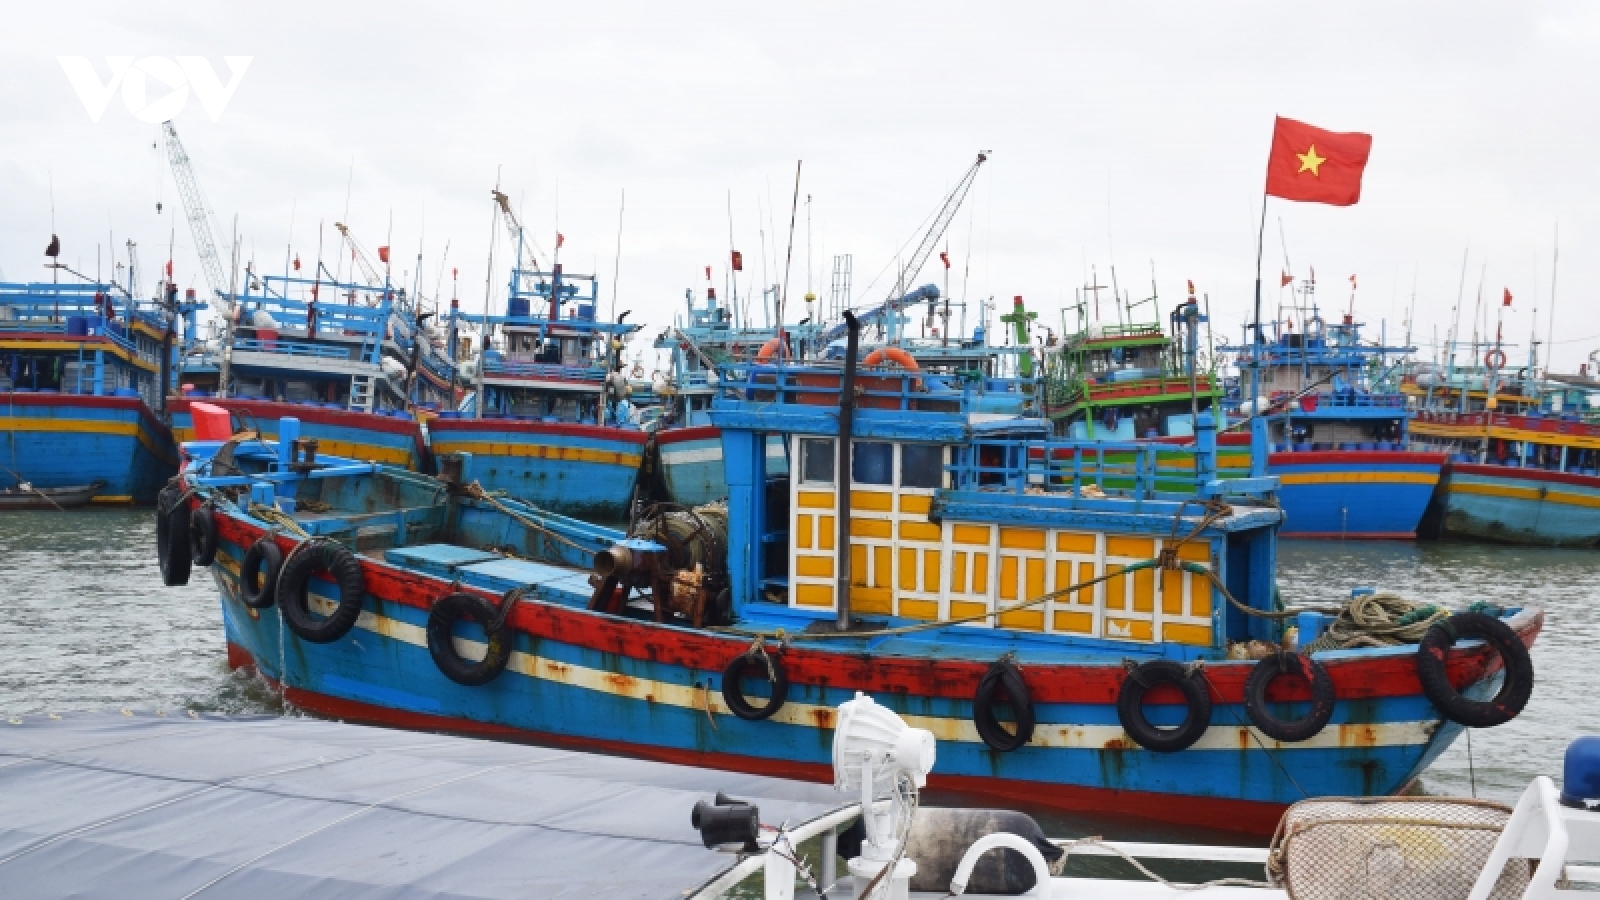 Bộ đội Biên phòng Bình Định vận động ngư dân neo đậu tàu thuyền tránh bão RAI